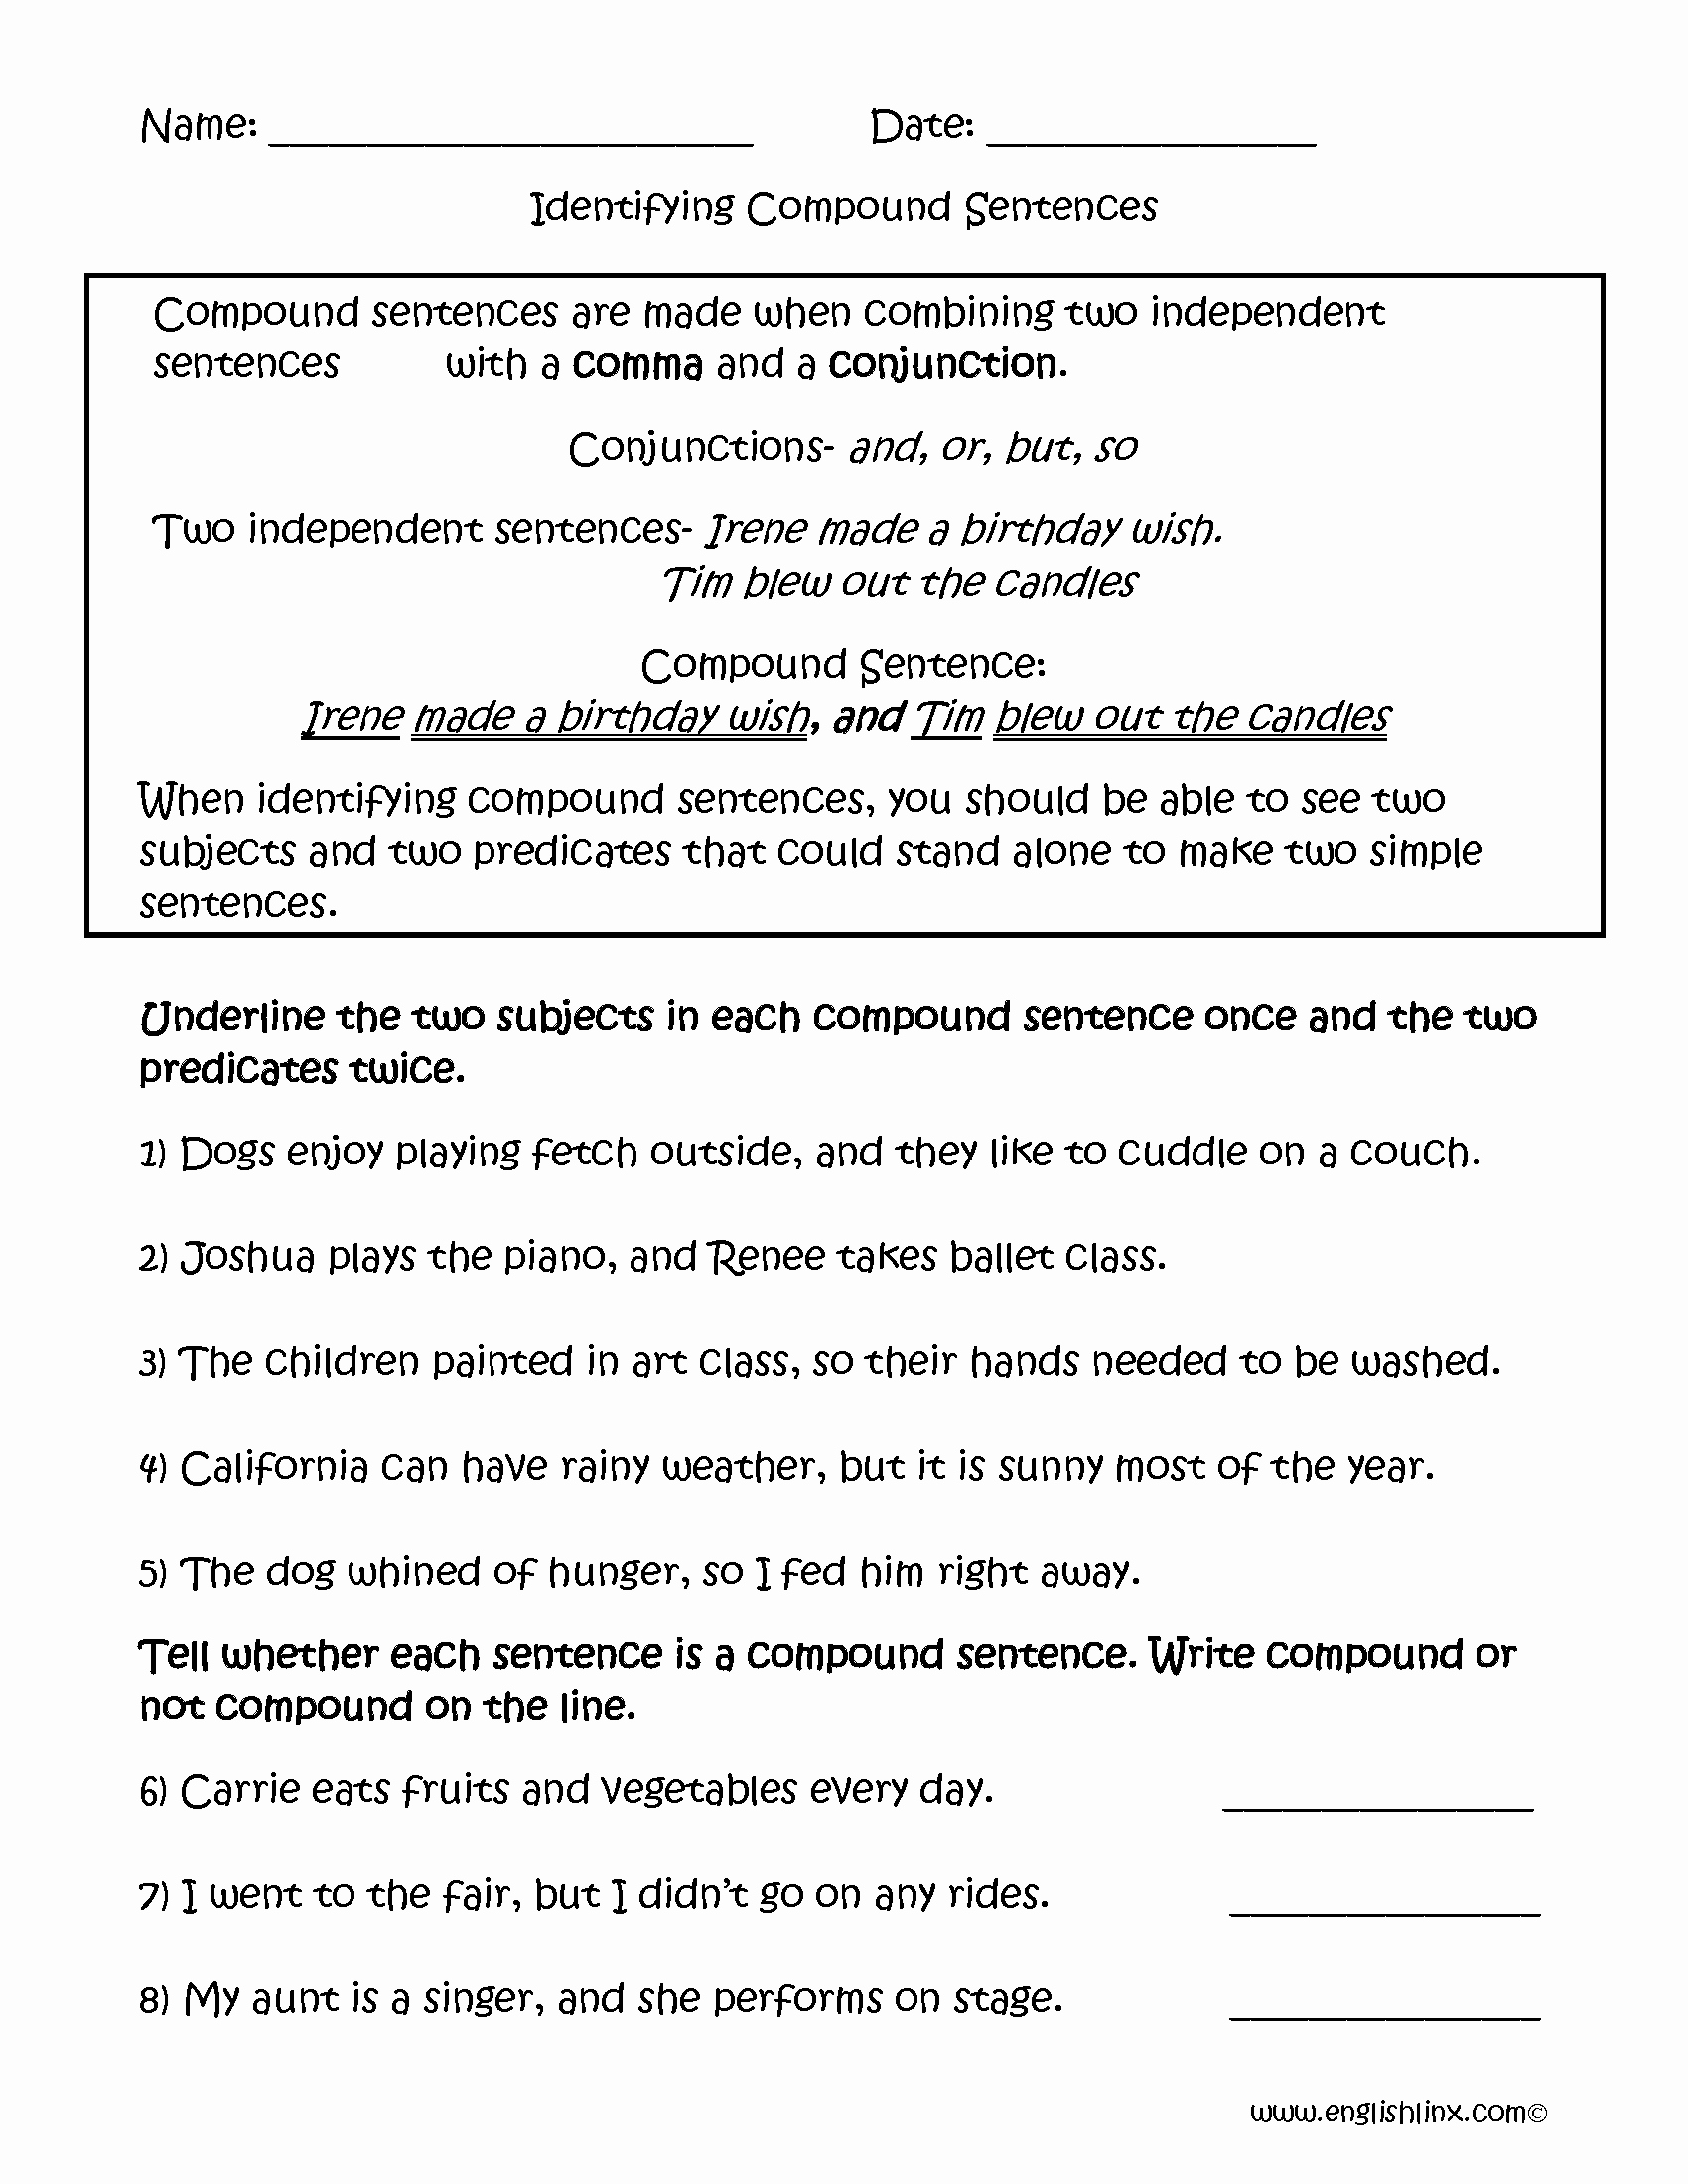 Compound Sentences Worksheet Pdf Unique Identifying Pound Sentences Worksheets